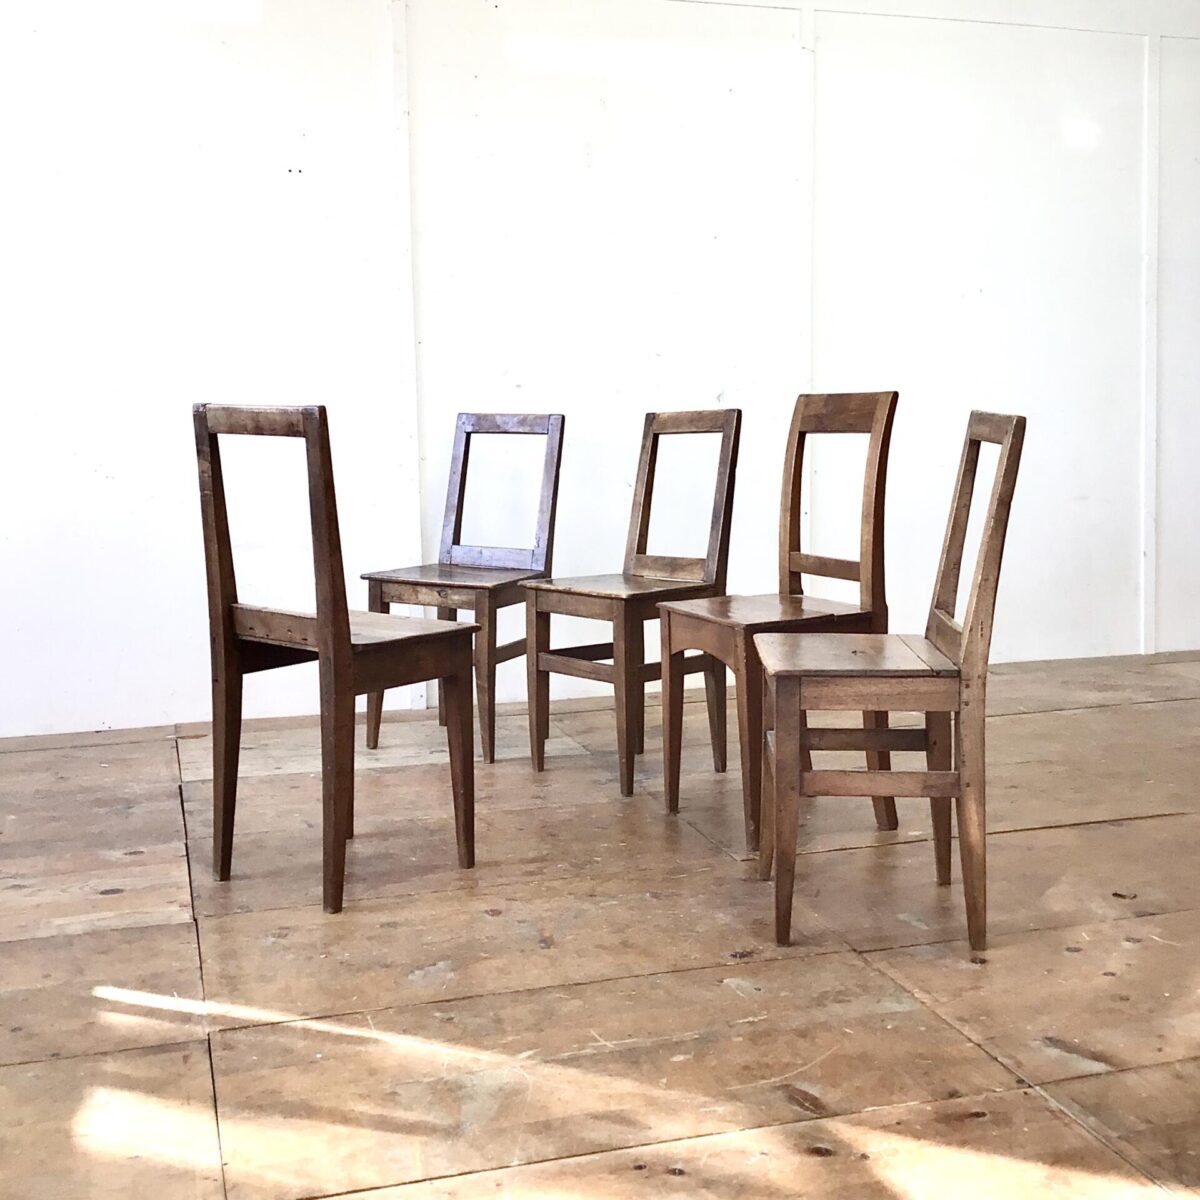 5 er Set Nussbaum Stühle mit markanter Alterspatina. Klare geradlinige Form, ideal um die aufrechte Haltung zu bewahren. 